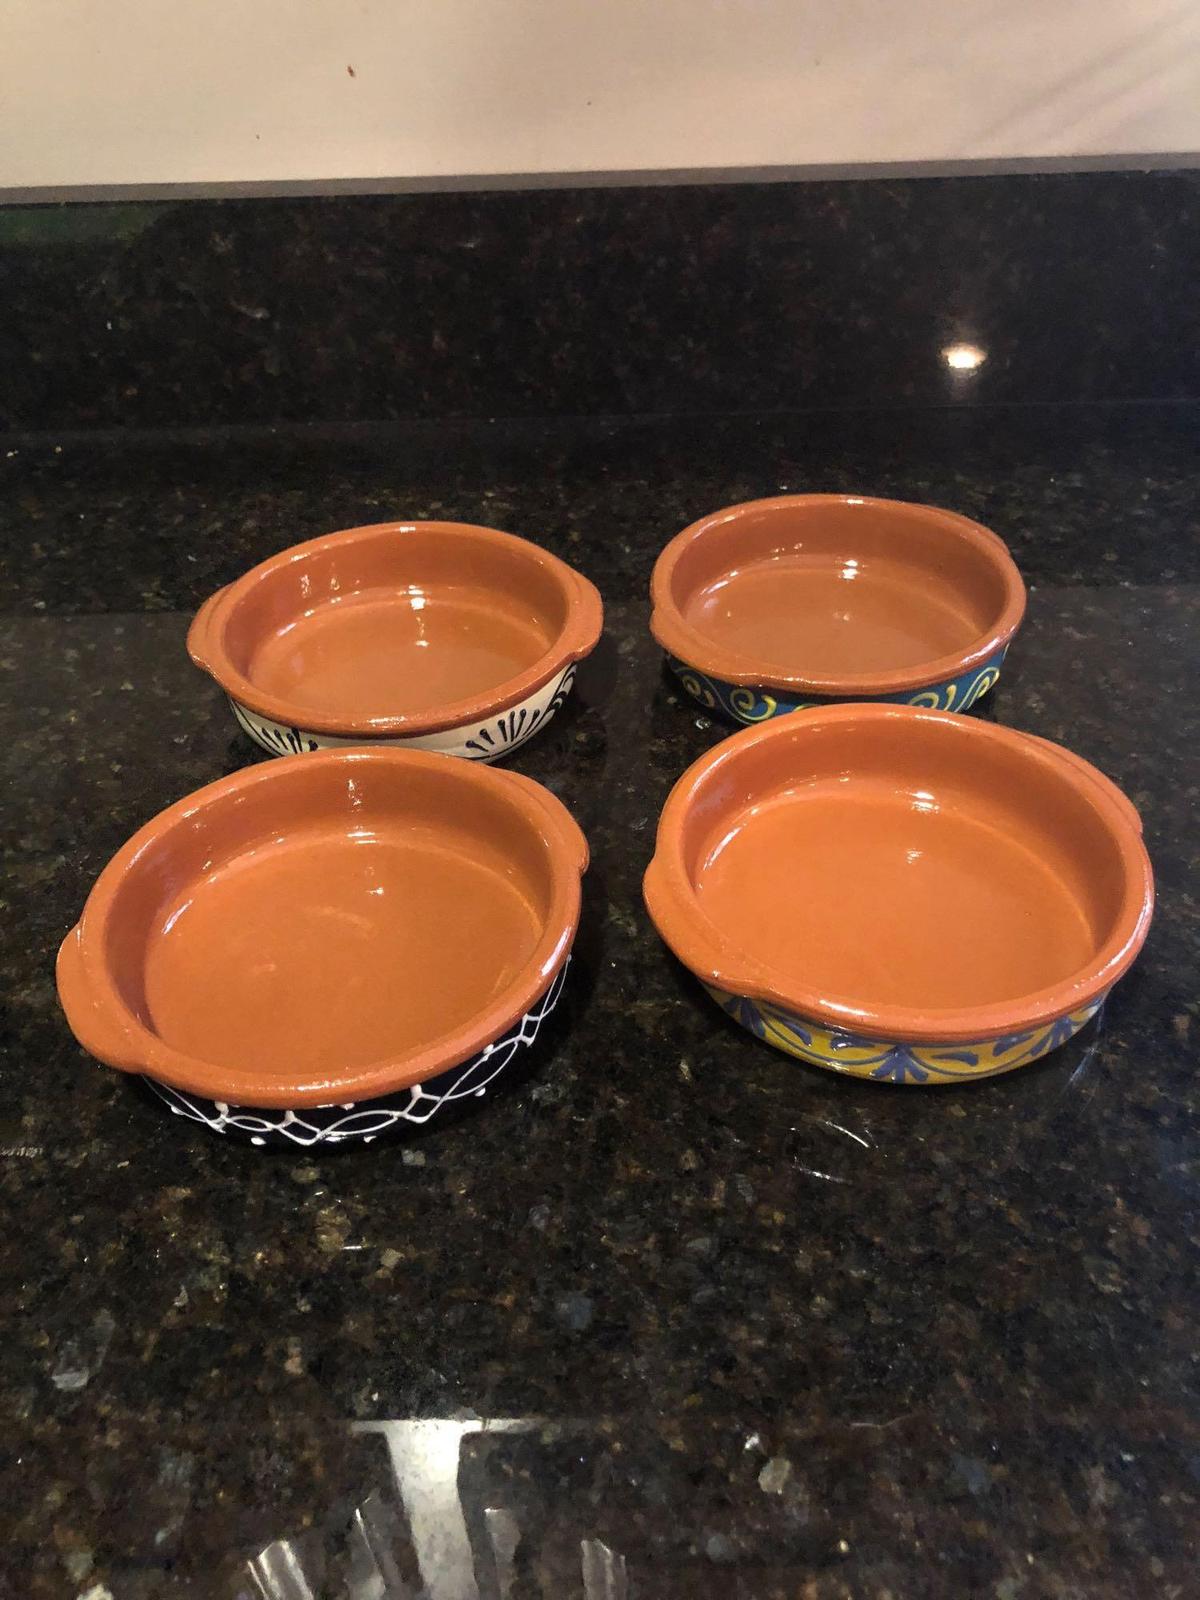 4 southwestern ceramic baking dishes